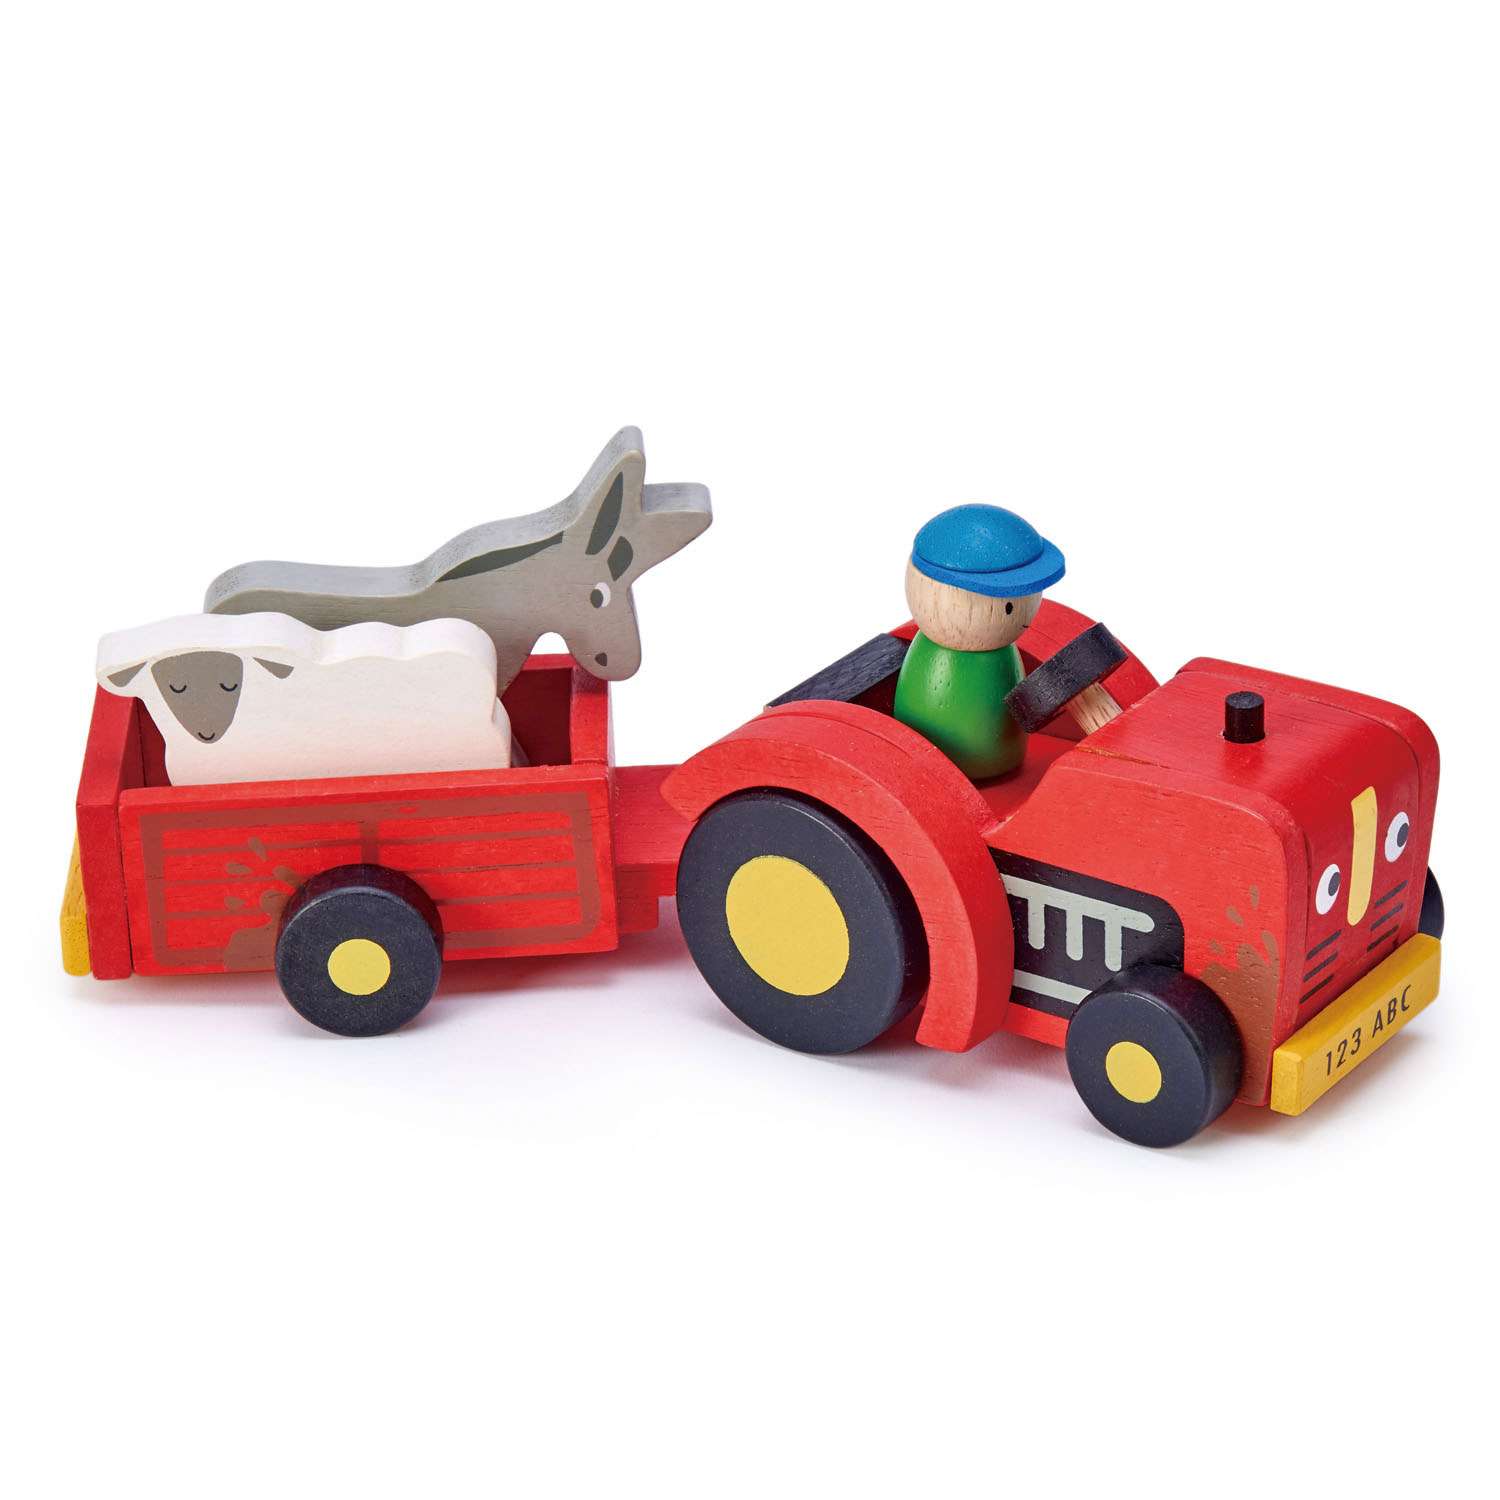 Tender Leaf Toys ของเล่นไม้ รถของเล่น รถแทรกเตอร์และรถพ่วง Tractor and Trailer